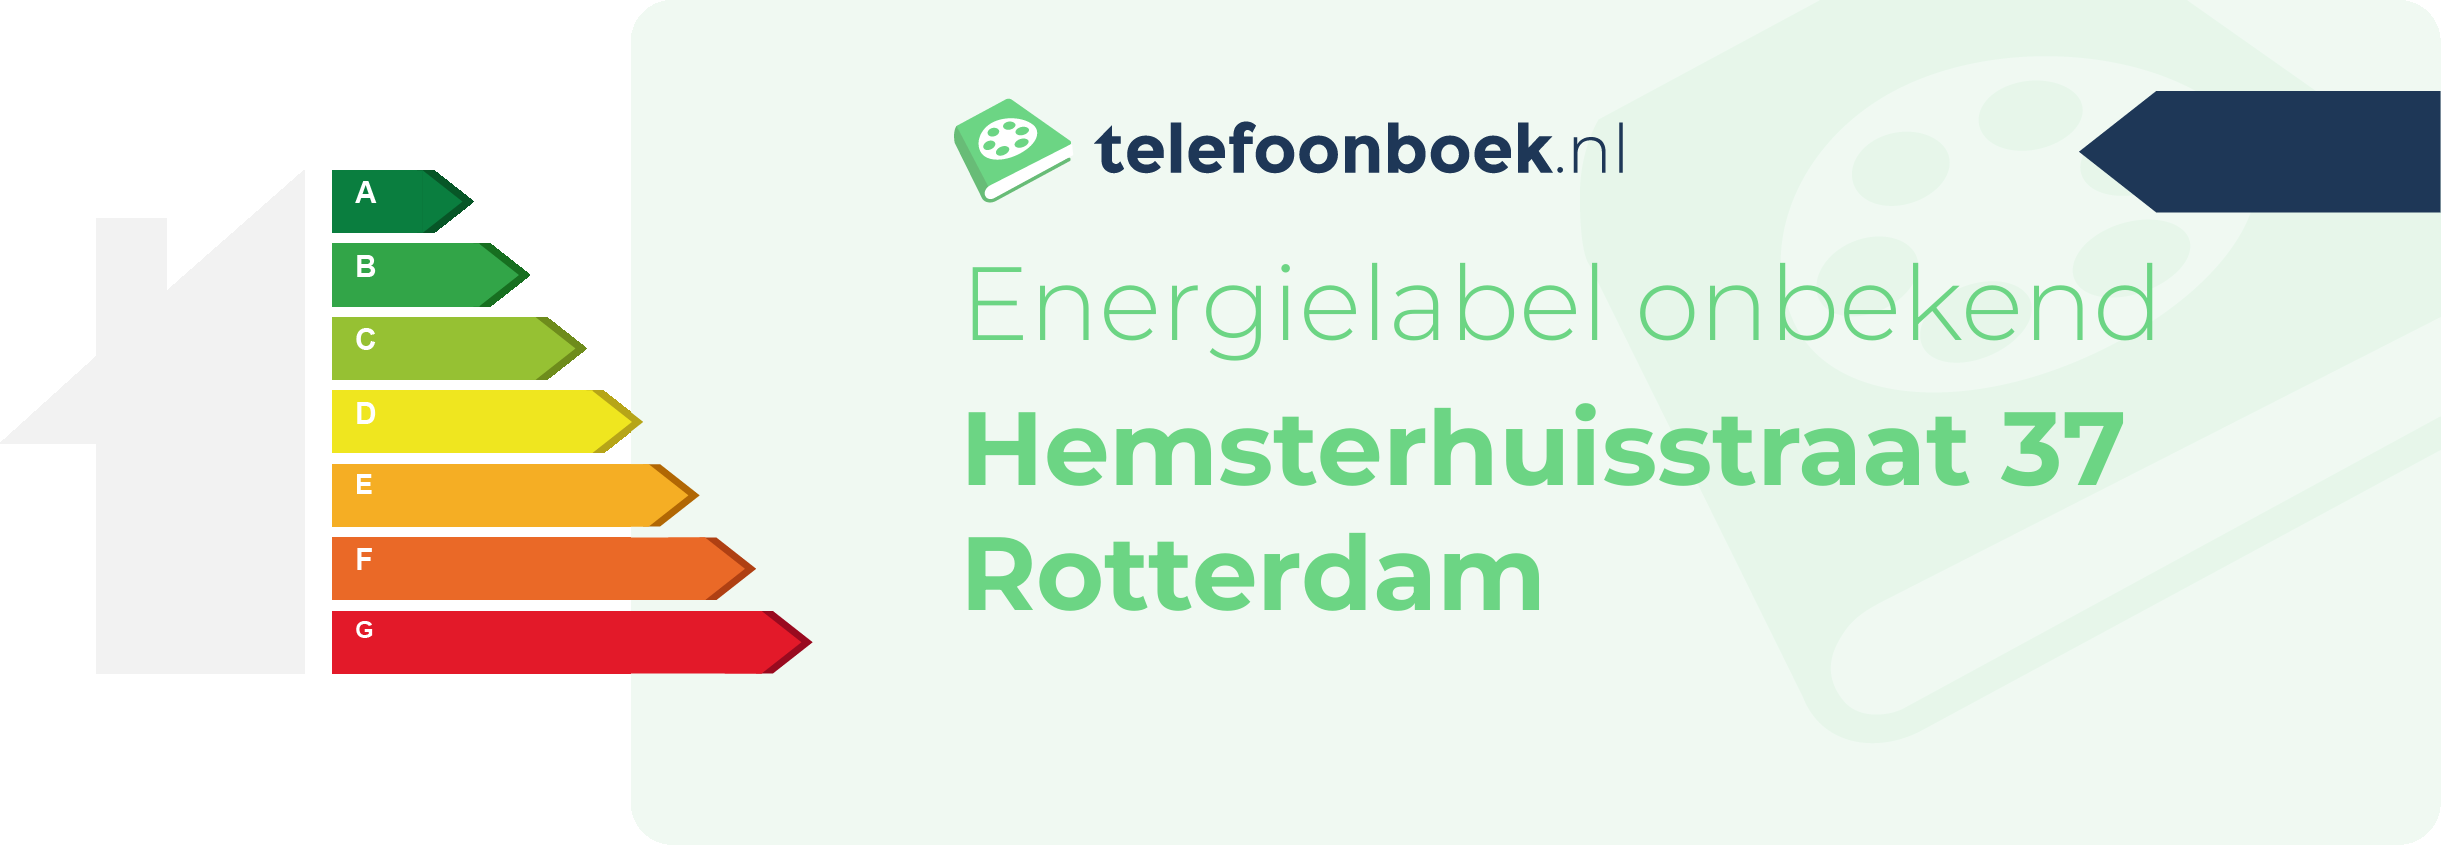 Energielabel Hemsterhuisstraat 37 Rotterdam